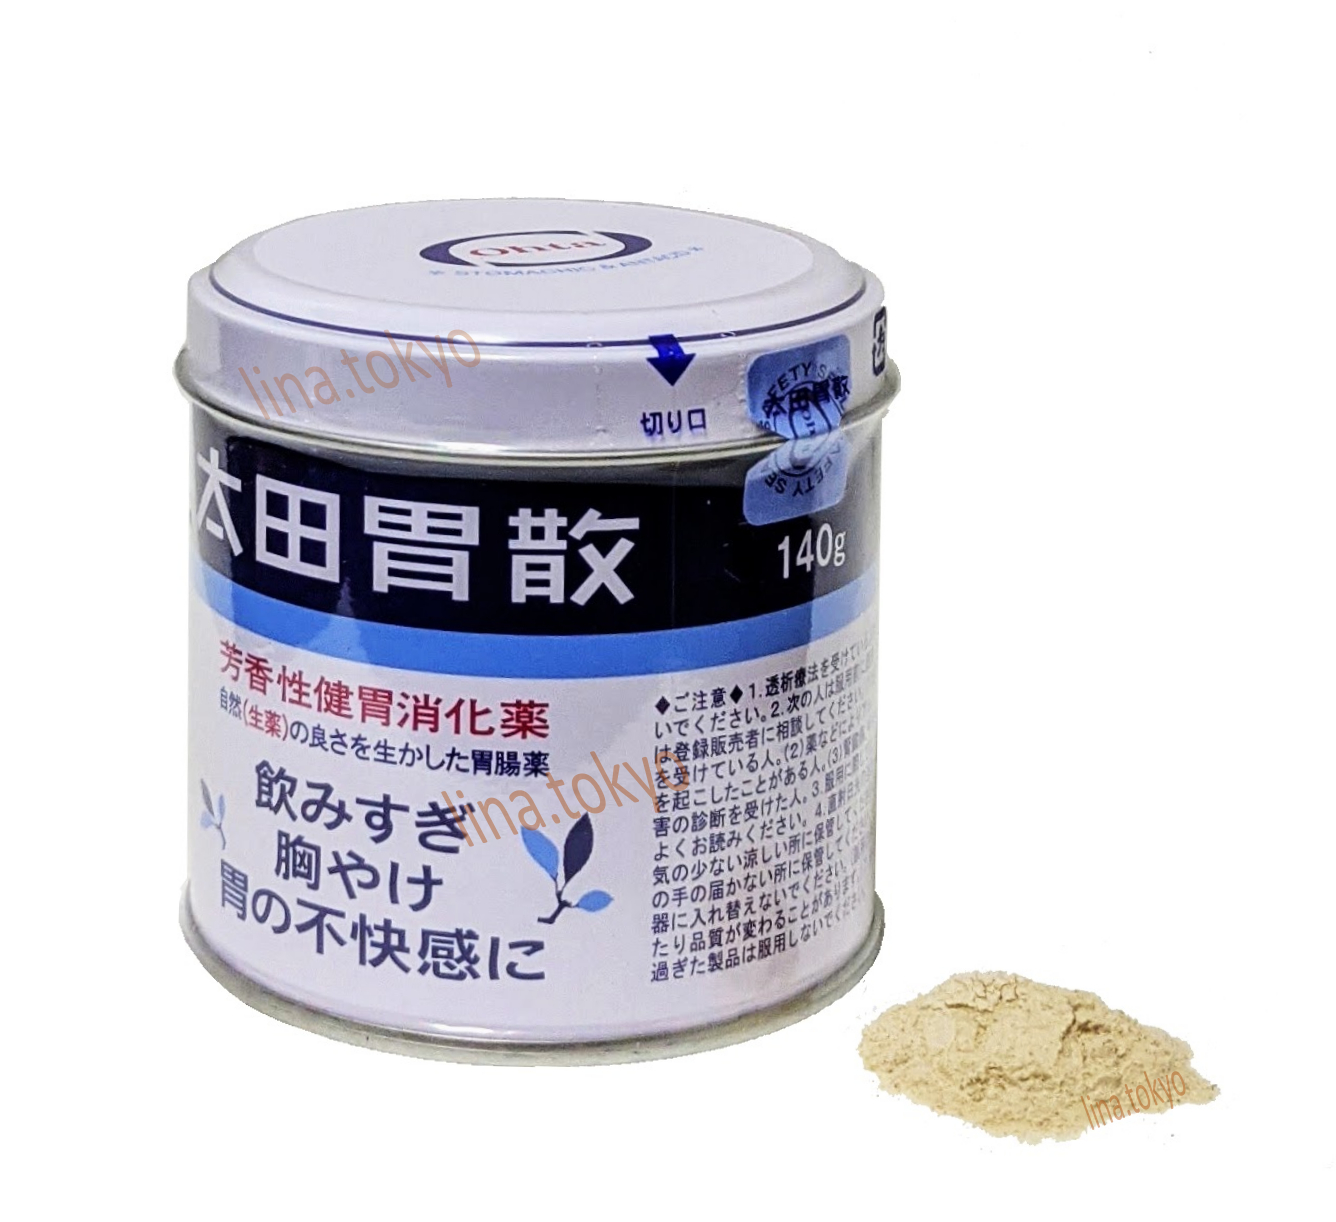 Thuốc bao tử Nhật Bản Ohta’s Isan 140g dạng bột trị đau bao tử, trị chứng khó tiêu, chống acid viêm dạ dày (N30026) (Miễn phí giao hàng)